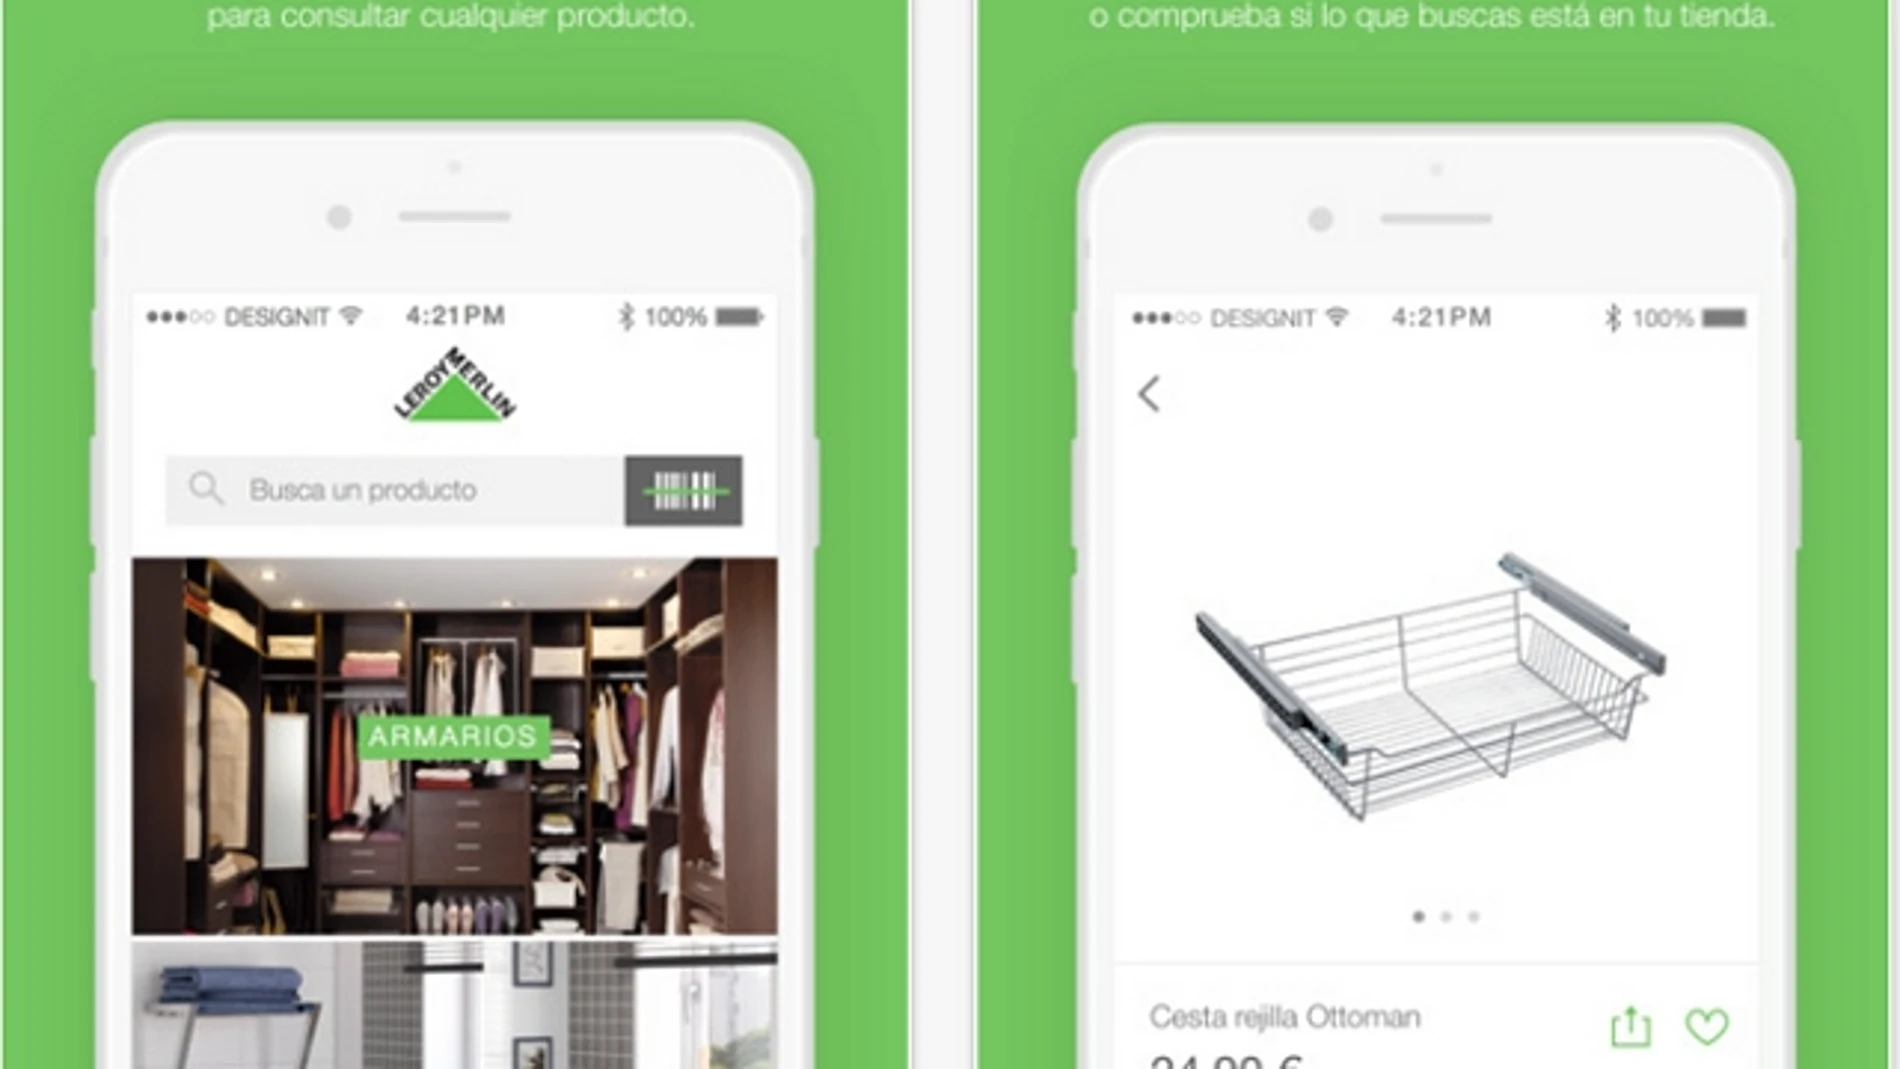 La app de Leroy Merlin ya permite hacer compras «online»